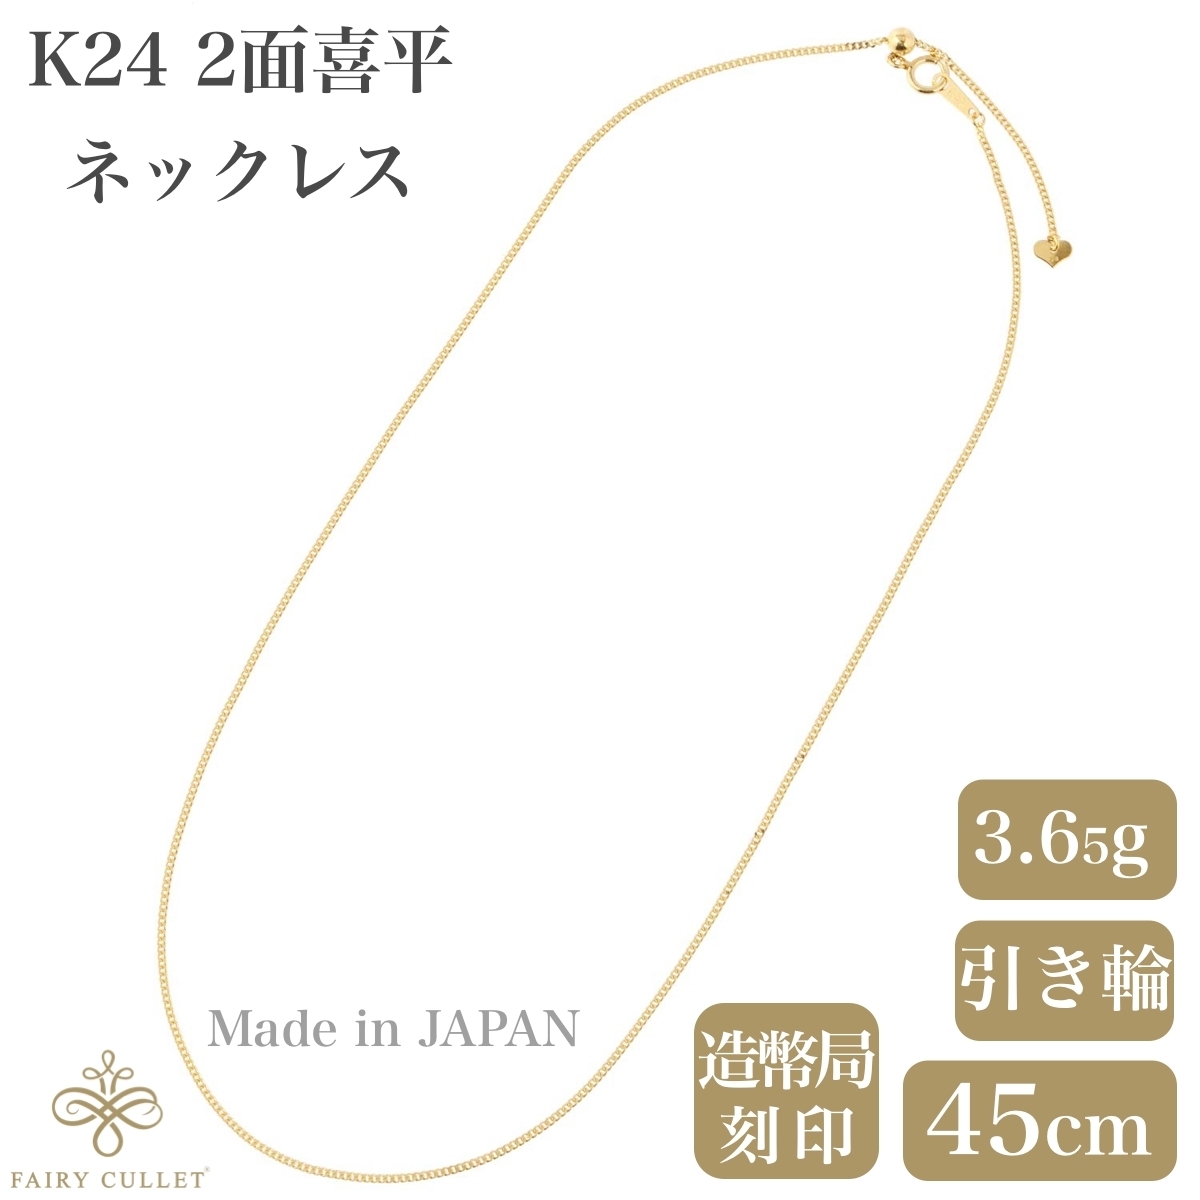 24金ネックレス K24 2面喜平チェーン 日本製 純金 検定印 3.65g 45cm スライドアジャスター付